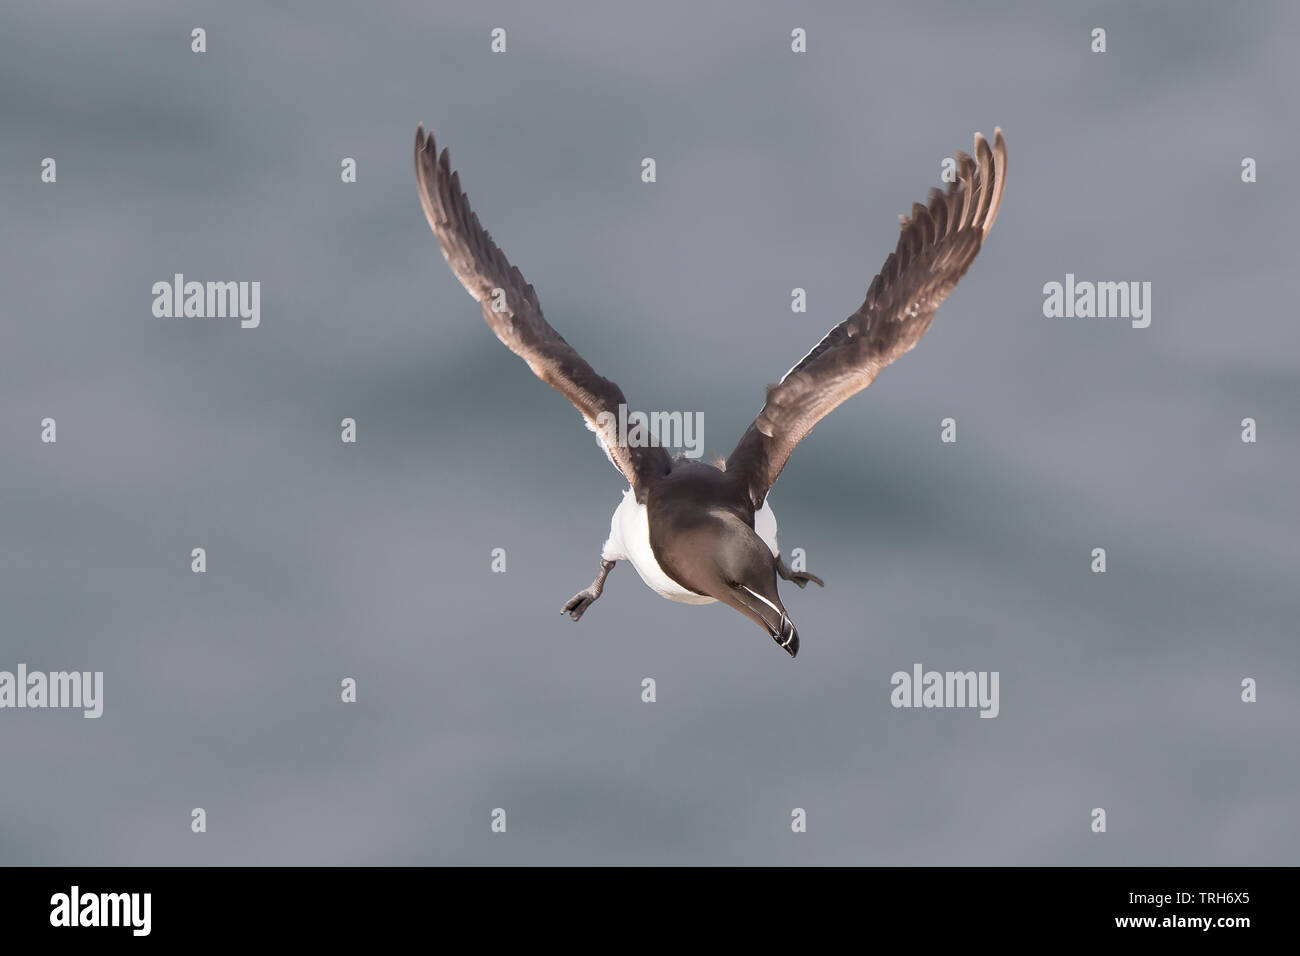 Chiudi, vista frontale di un selvaggio, britannico razorbill Seabird (Alca torda) isolato in volo su acqua di mare, Bempton UK, stagione estiva di allevamento. Foto Stock